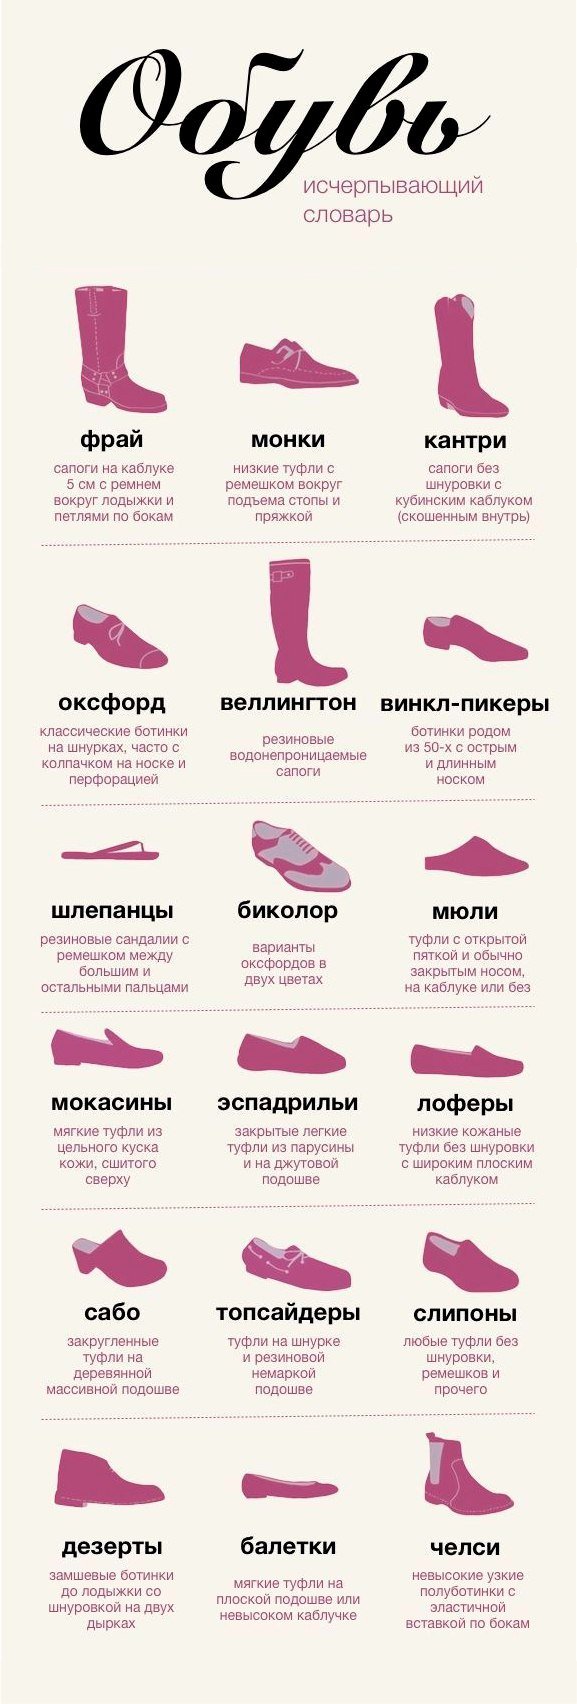 Название обуви. Обувь название моделей. Наименование обуви женской. Женская обувь названия моделей. Название обуви список